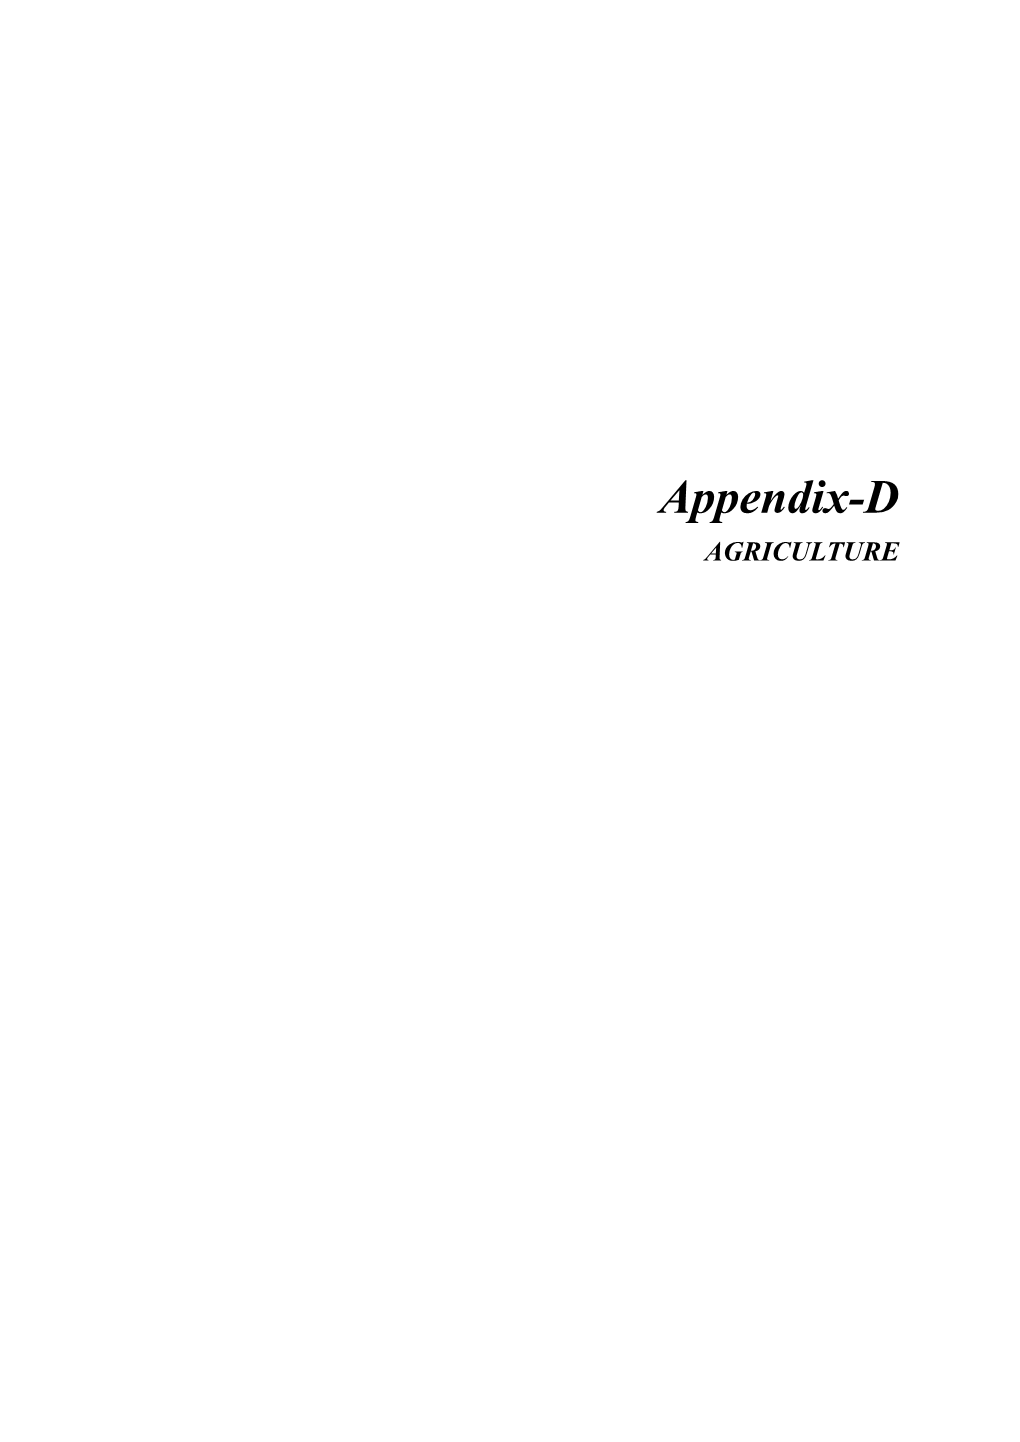 Appendix-D AGRICULTURE